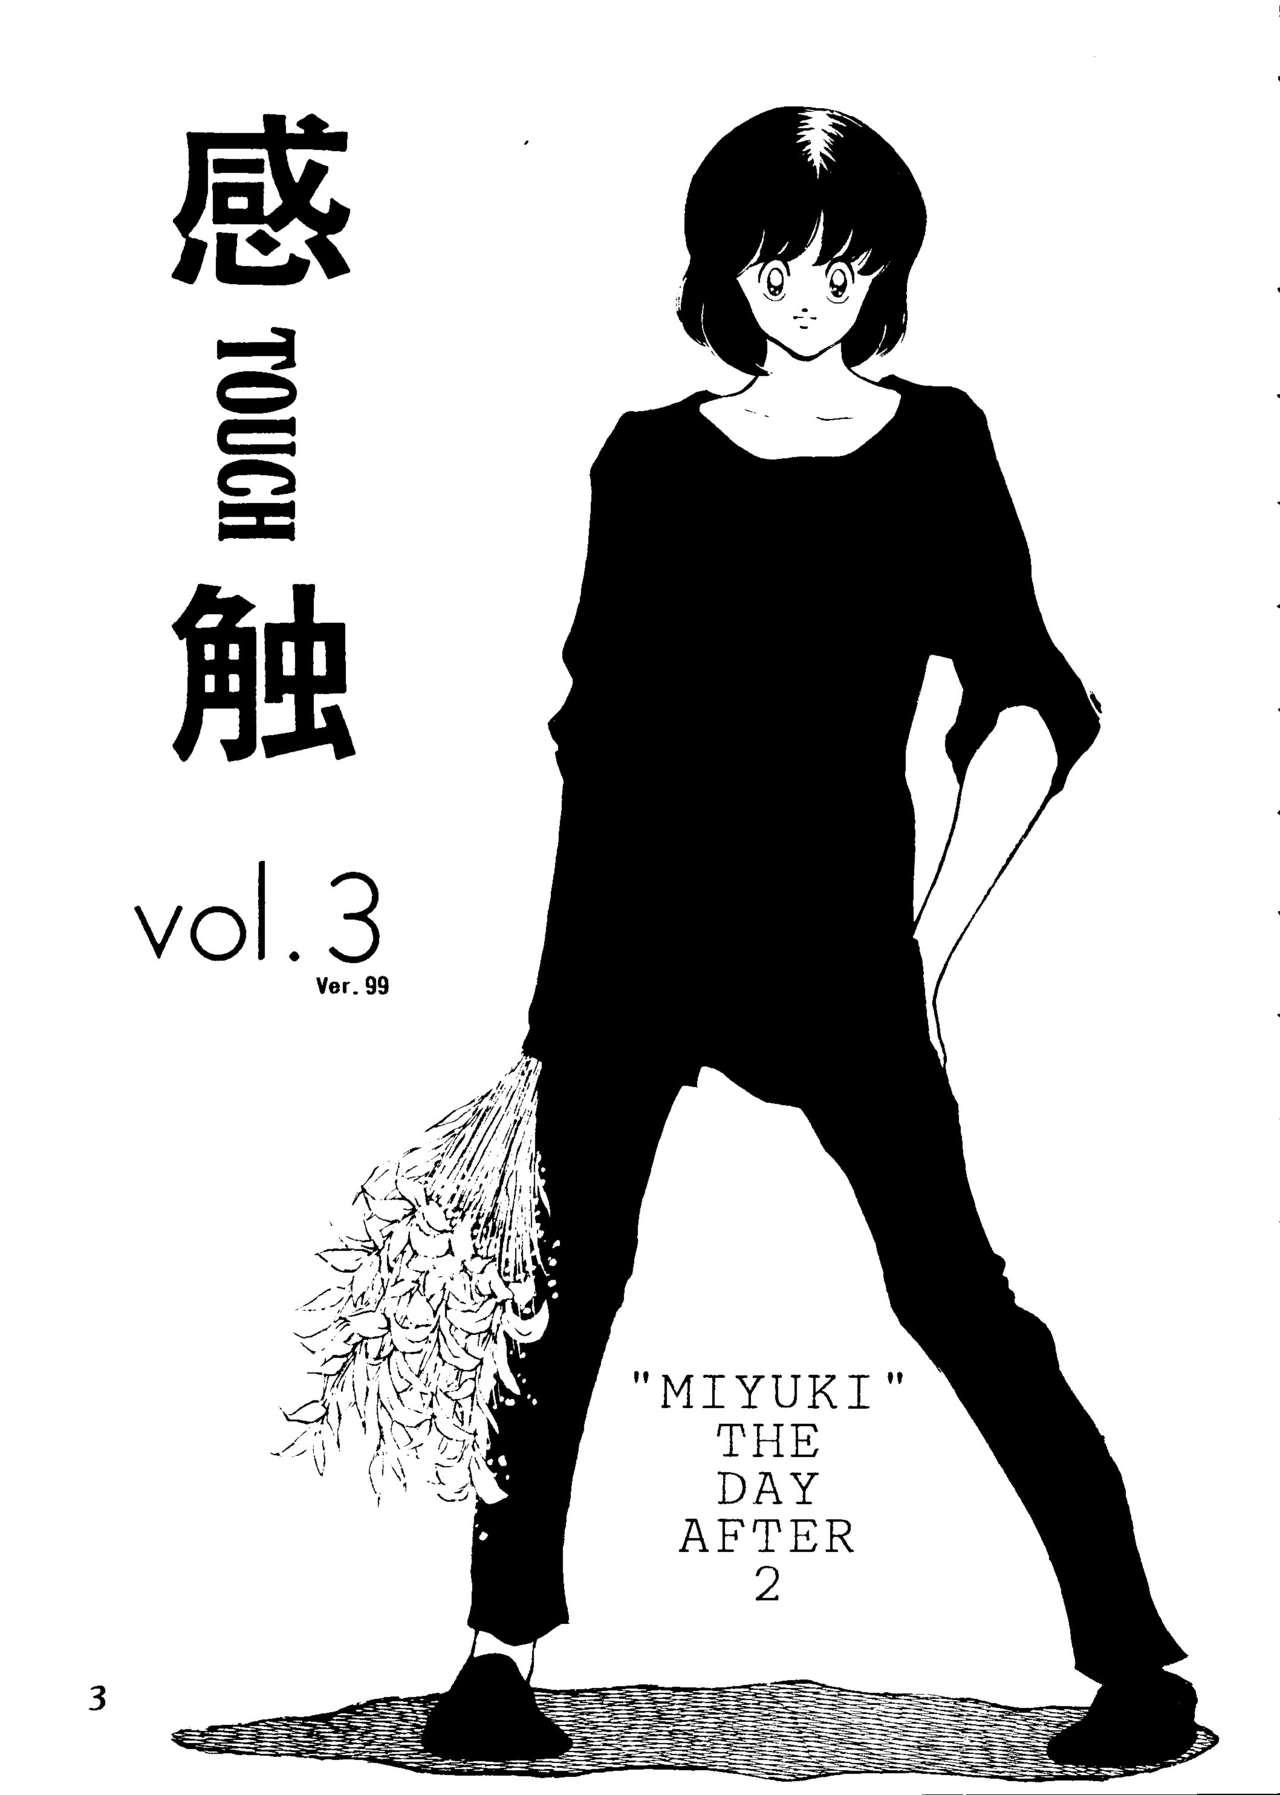 Hard Fuck Touch vol. 3 ver.99 - Miyuki Deutsche - Page 2